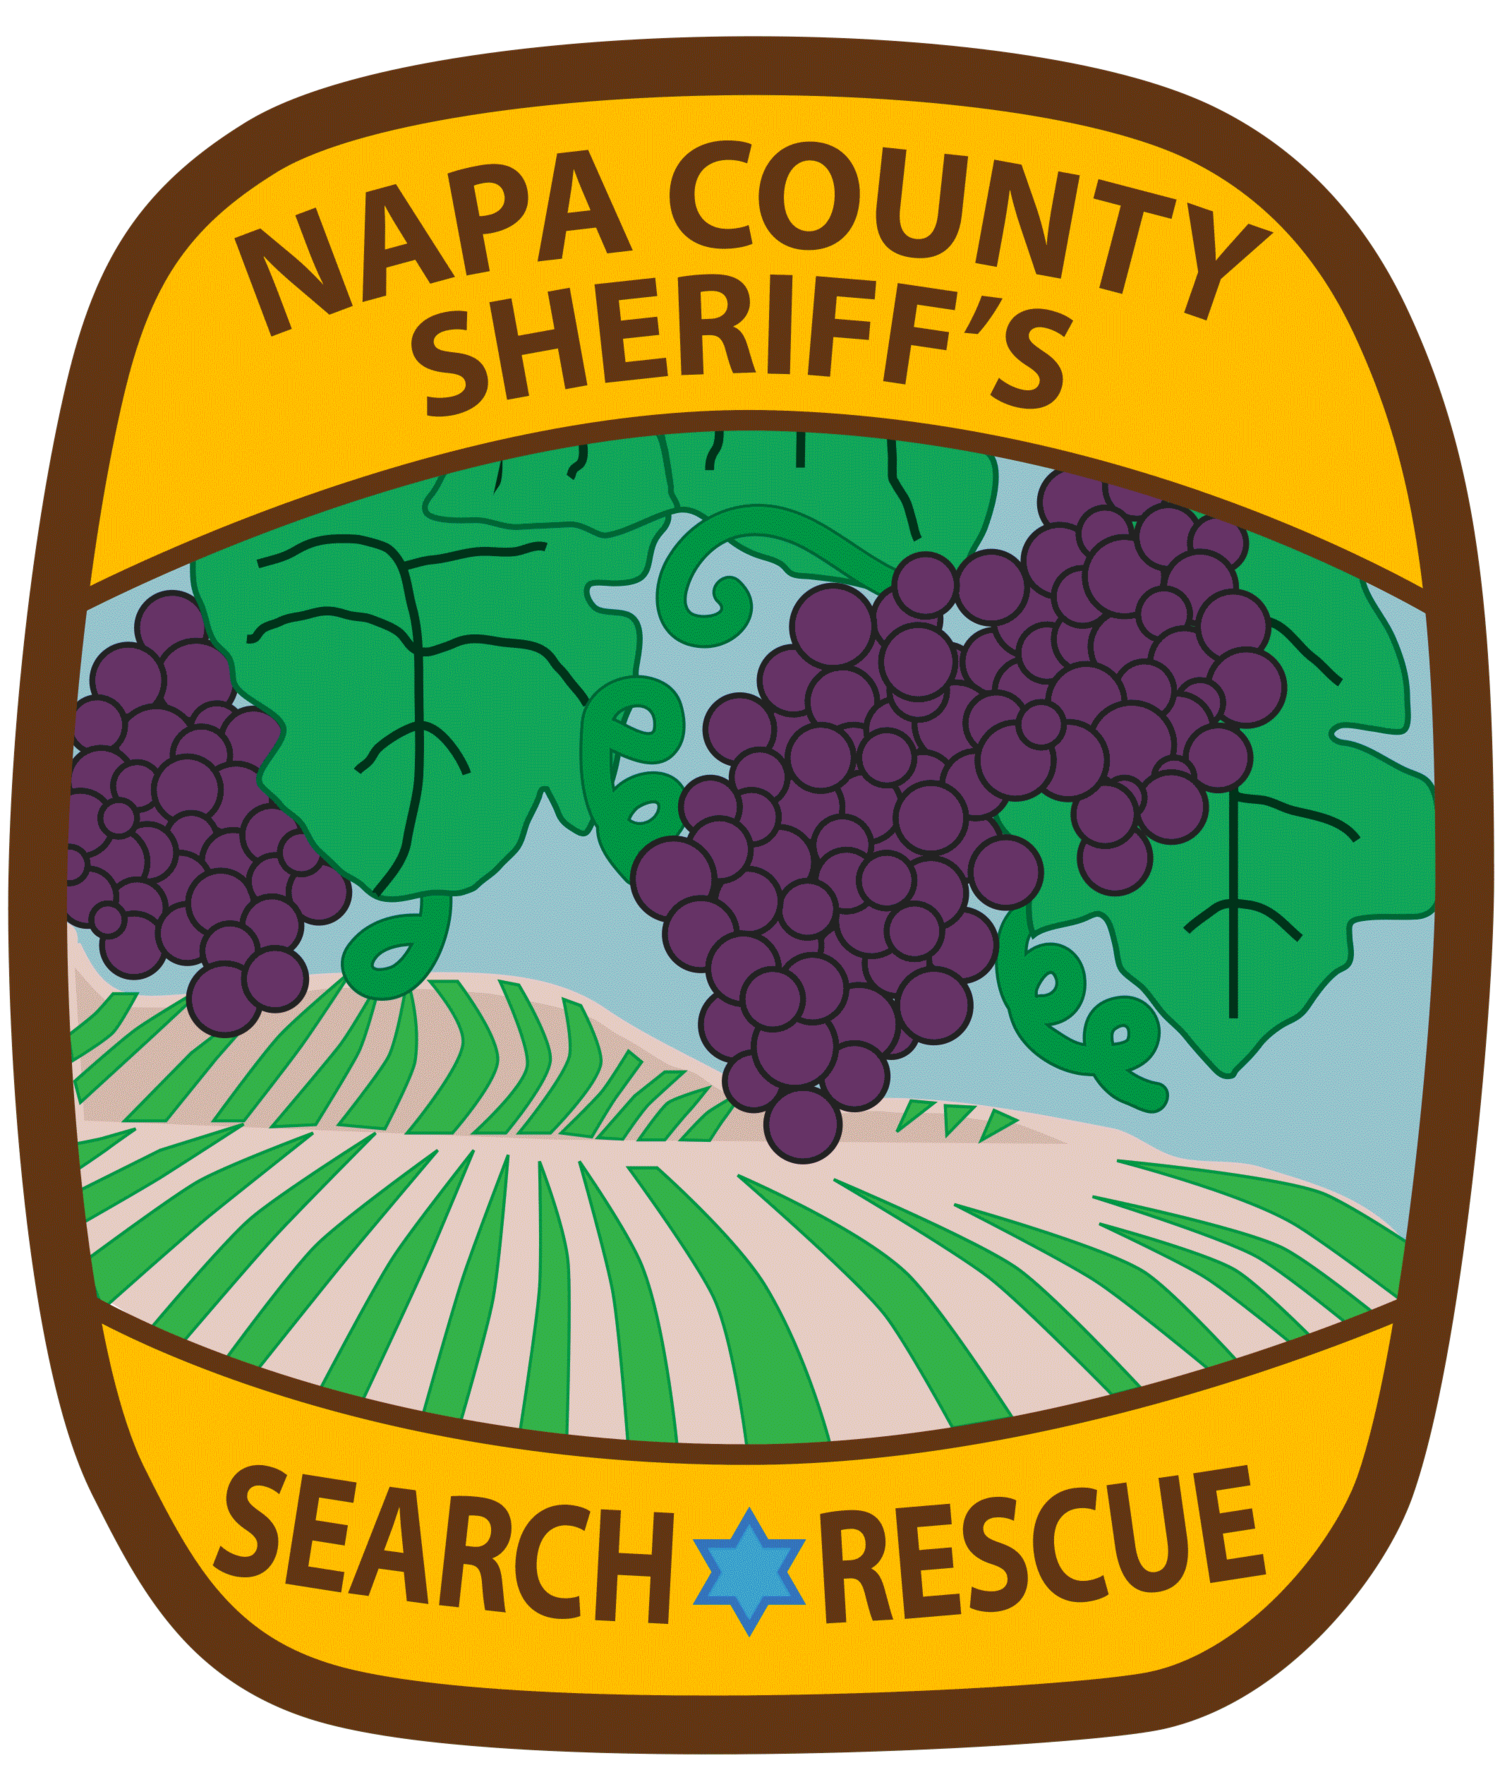 Napa County Search & Rescue Team